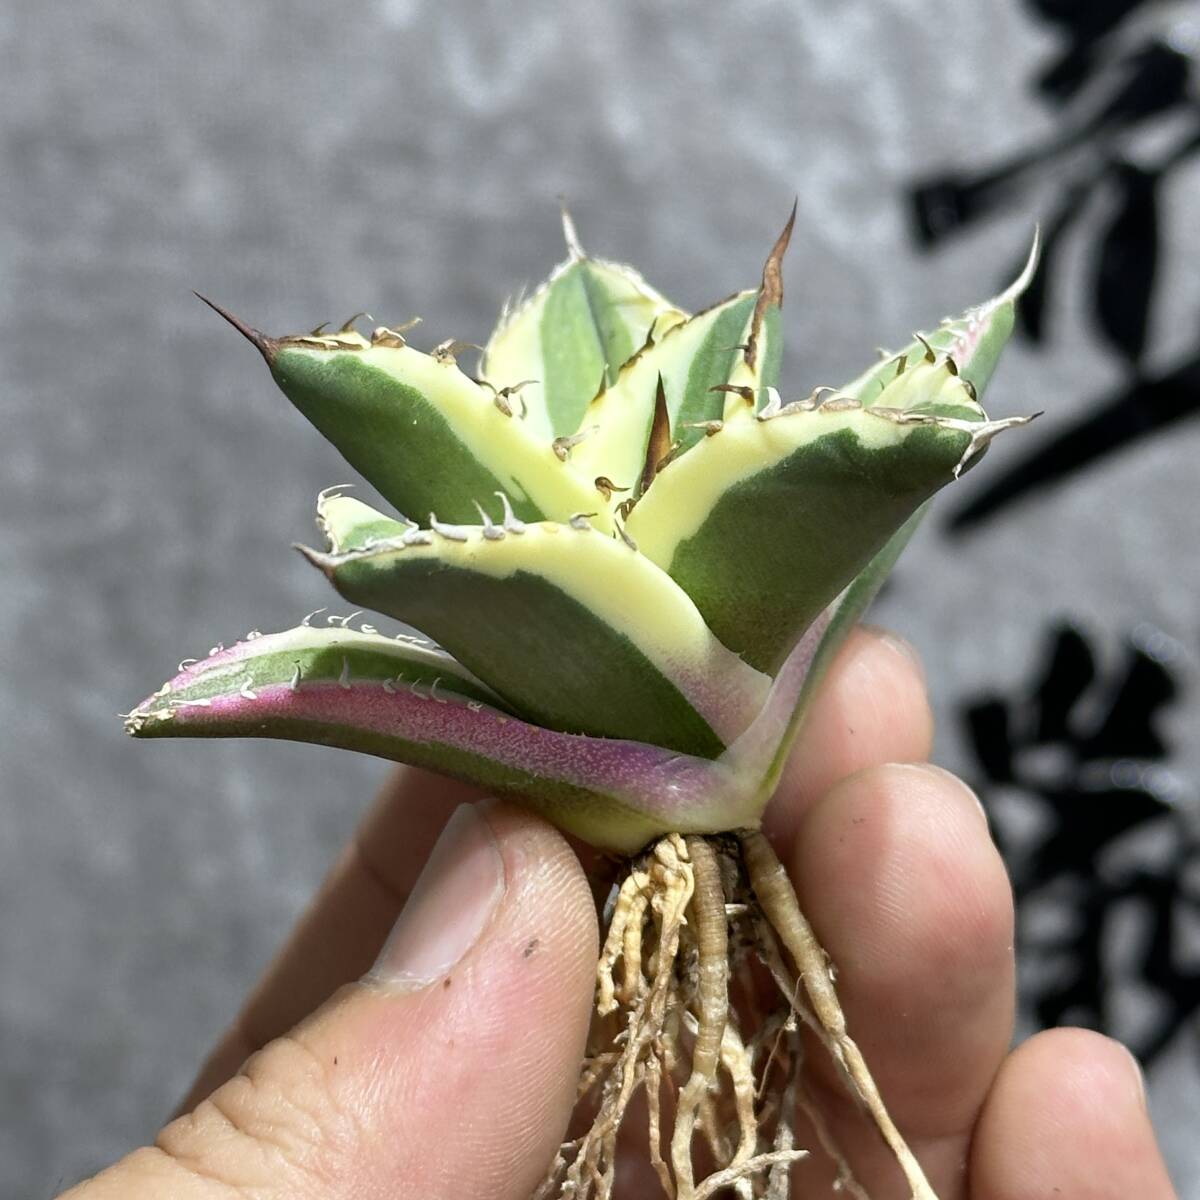 [ дракон ..]① No.151 специальный отбор агава суккулентное растение snagru палец на ноге s первоклассный АО очень редкий!